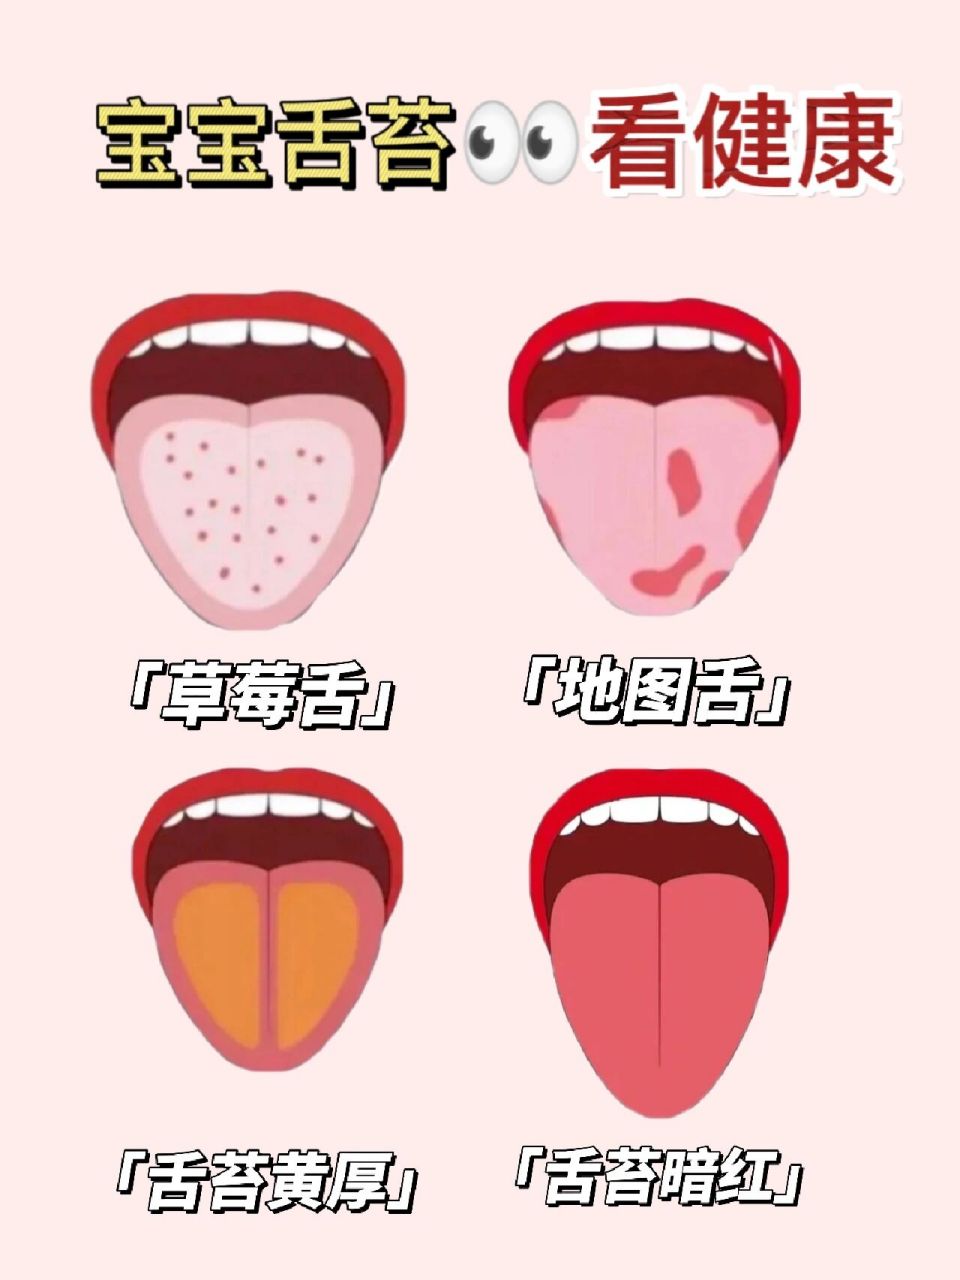 9299宝宝的身体情况,往往能通过舌相来判断,健康的宝宝舌头是淡